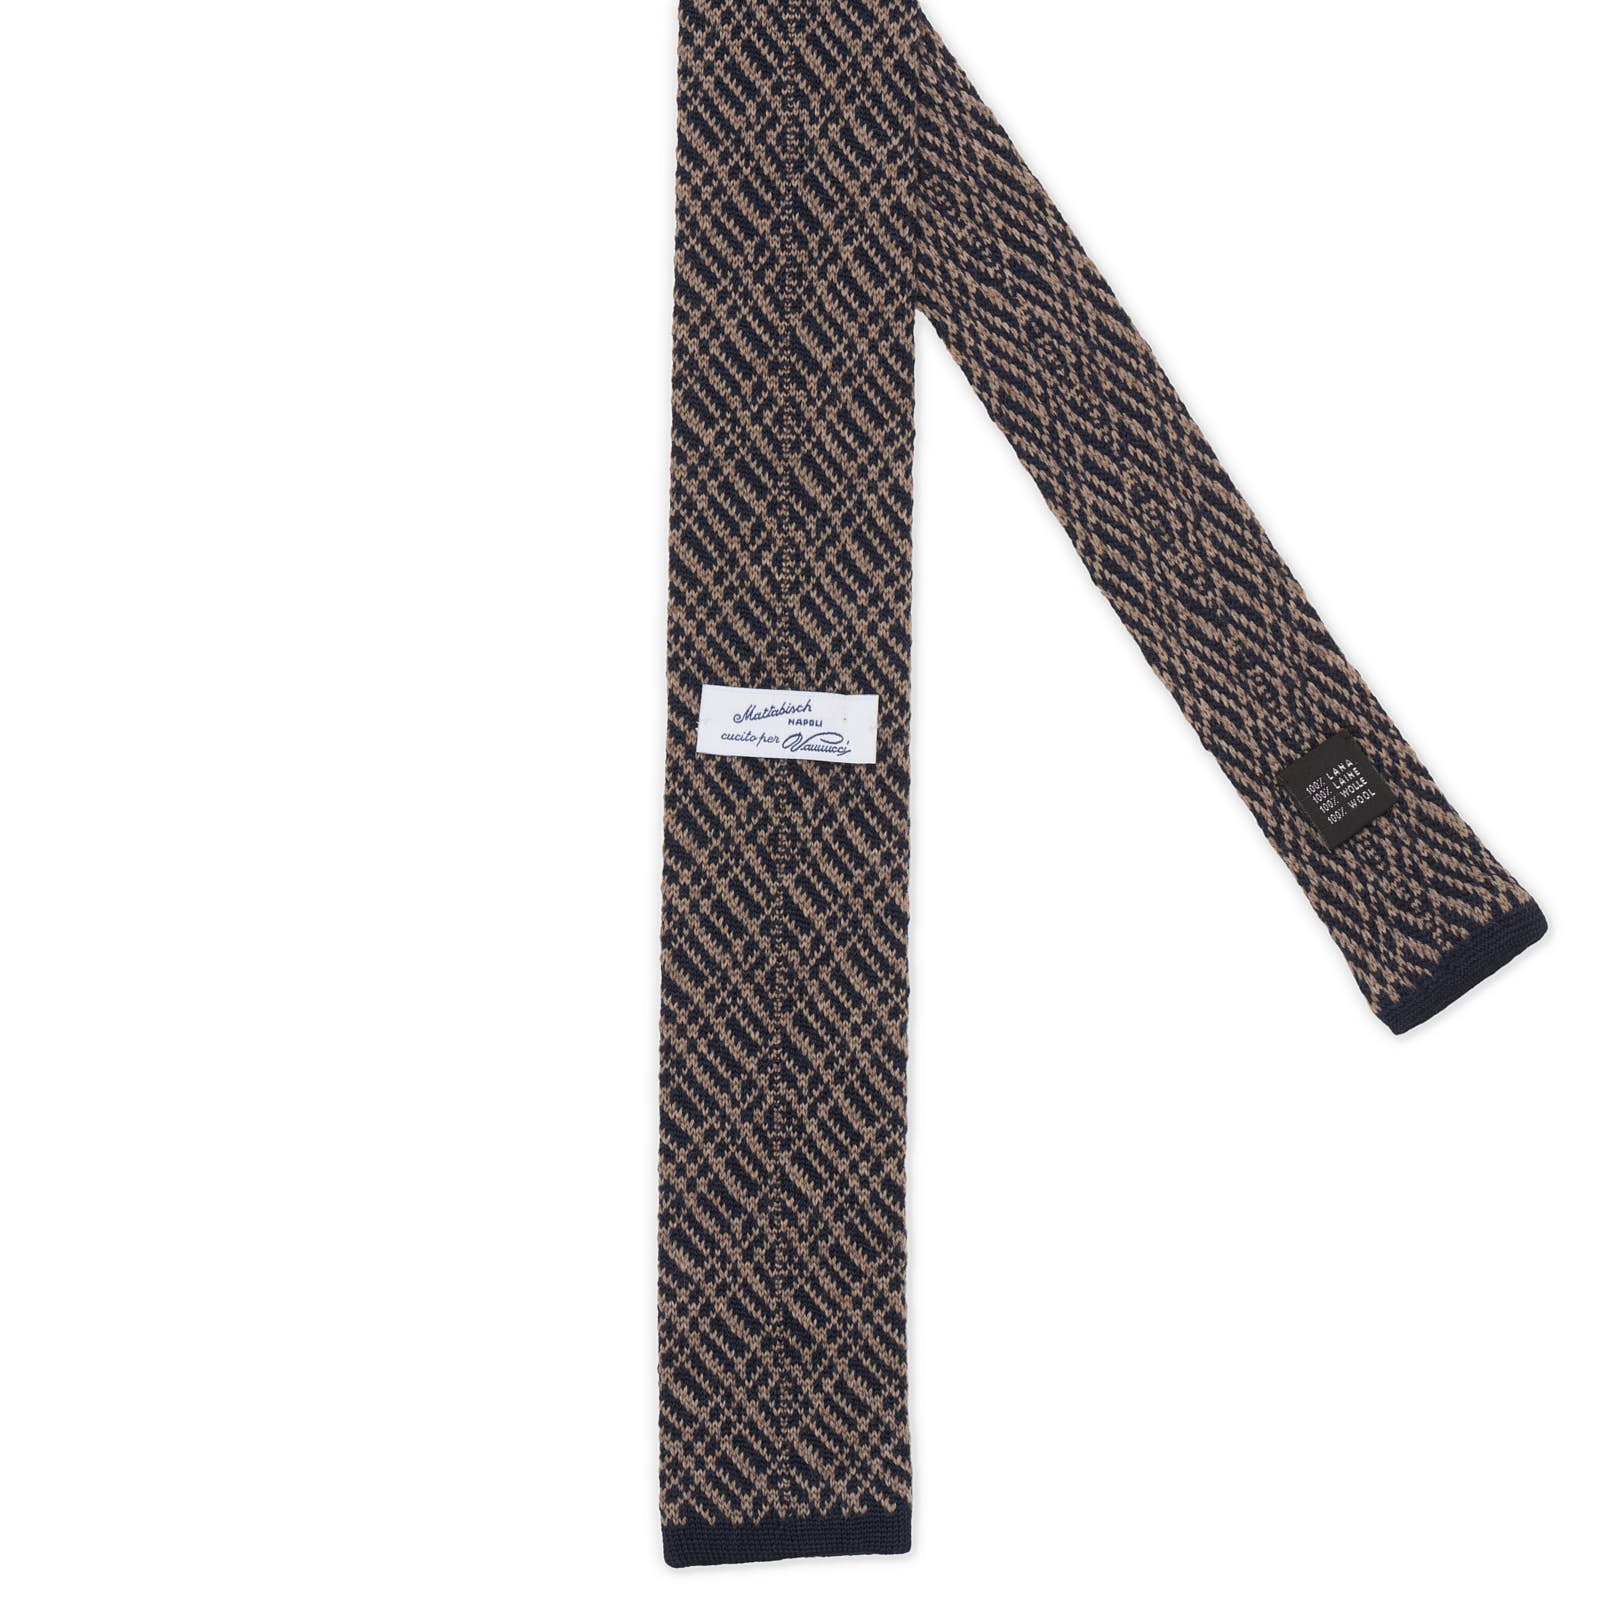 MATTABISCH FOR VANNUCCI Navy Blue-Brown Geometric Pattern Wool Knit Tie NEW